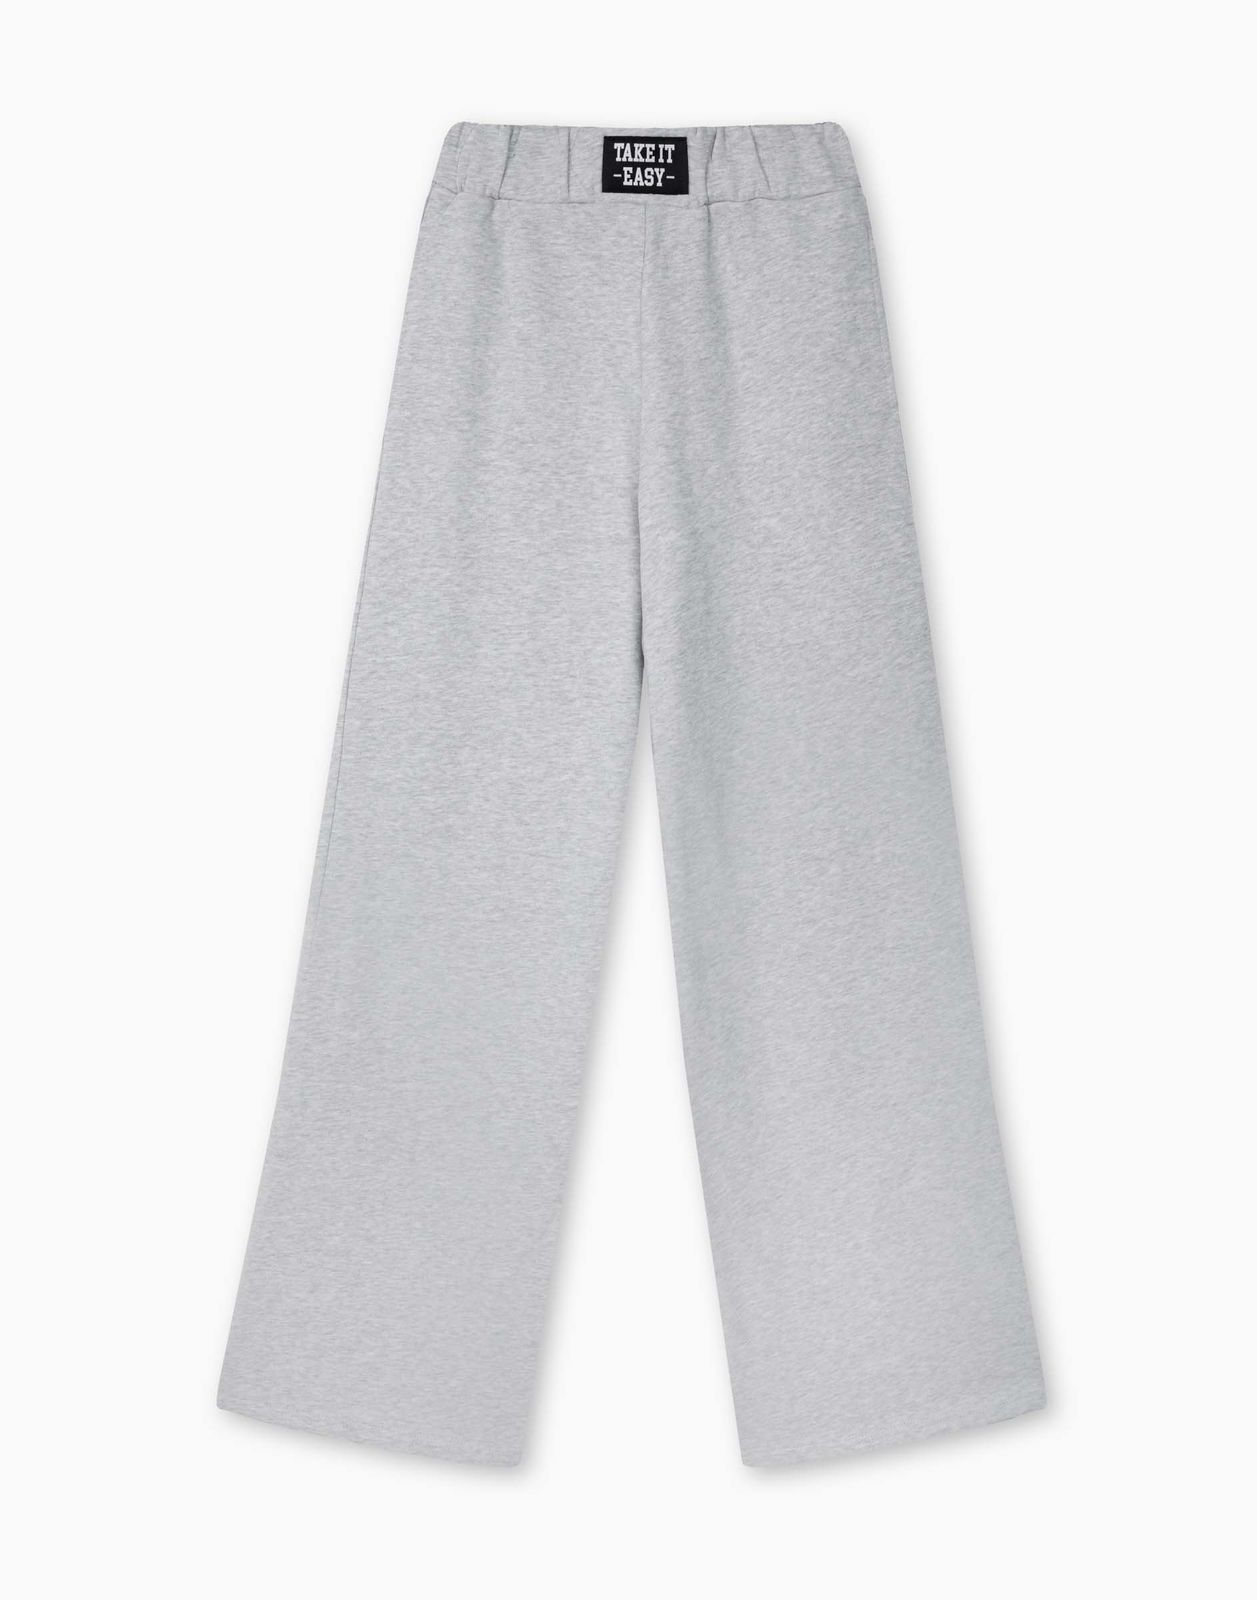 Спортивные брюки для девочки Gloria Jeans GAC022212 светло-серый меланж 14+/164